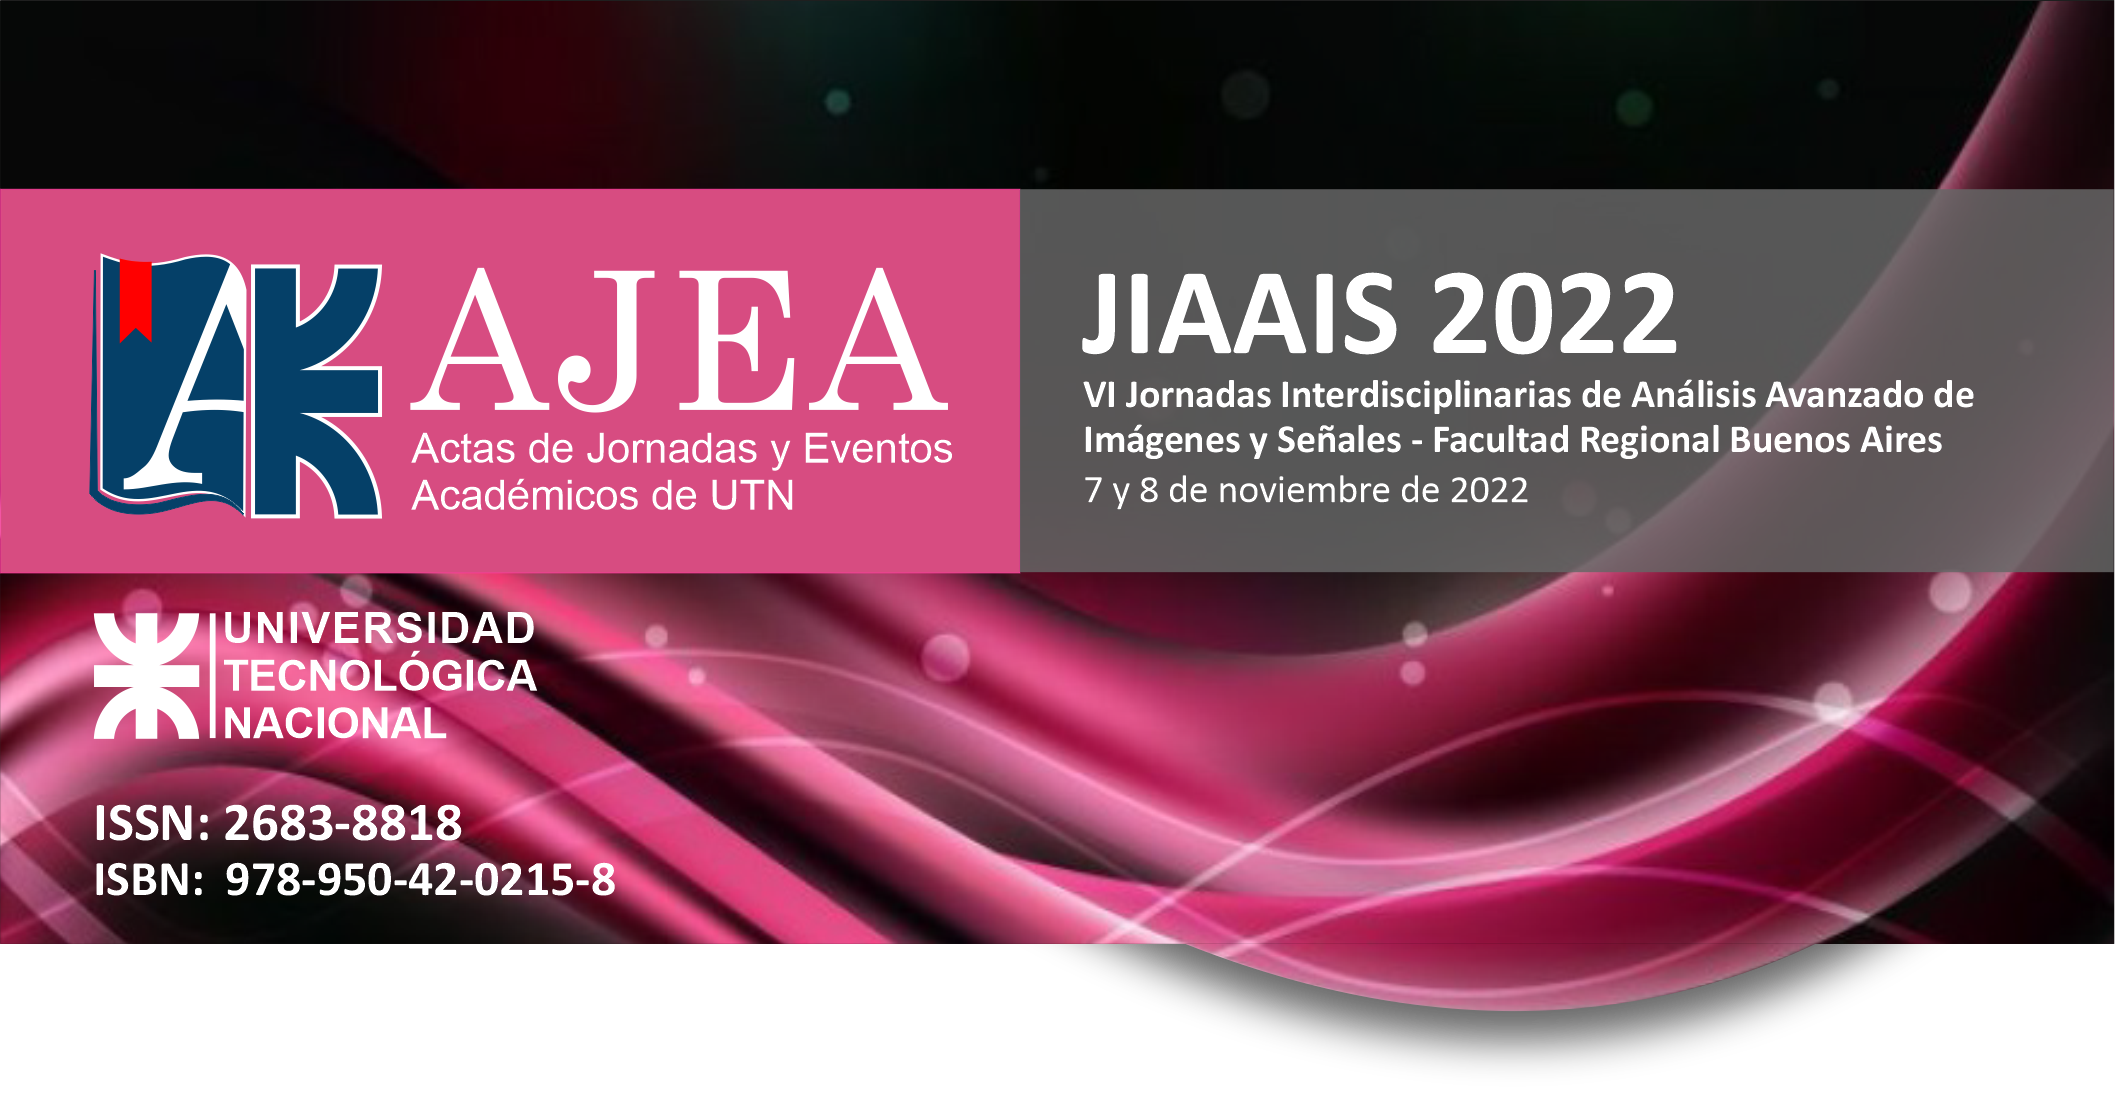                     Ver Núm. AJEA 31 (2024): JIAAIS 2022 - VI Jornadas Interdisciplinarias de Análisis Avanzado de  Imágenes y Señales
                